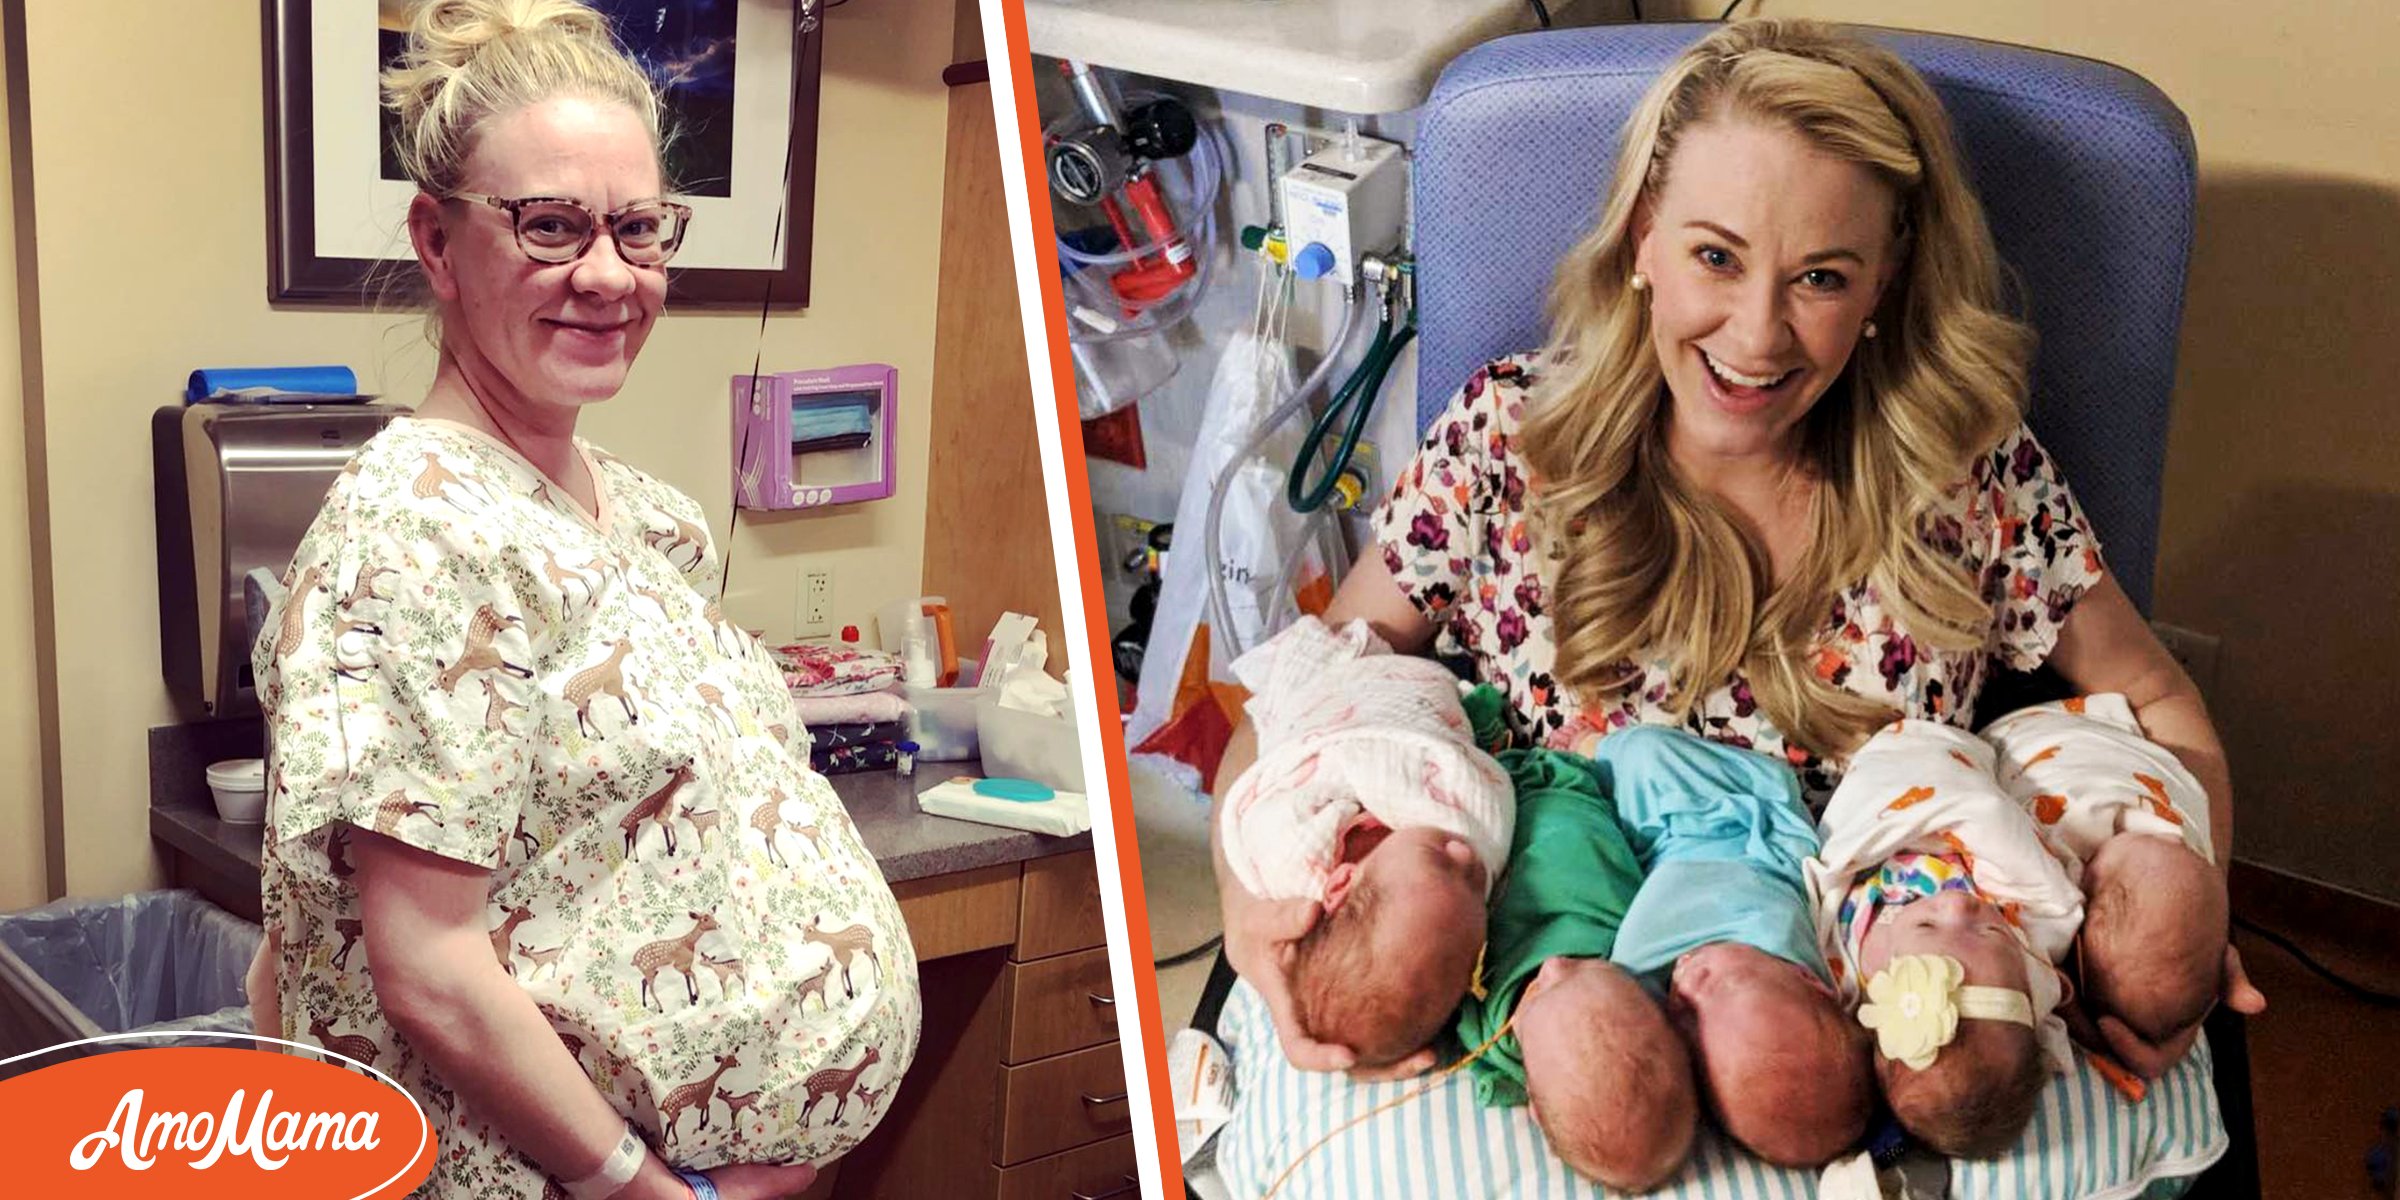 Une mère de l’Utah donne naissance à des quintuplés après avoir désespérément rêvé d’un bébé pendant des années : “J’étais stupéfaite”